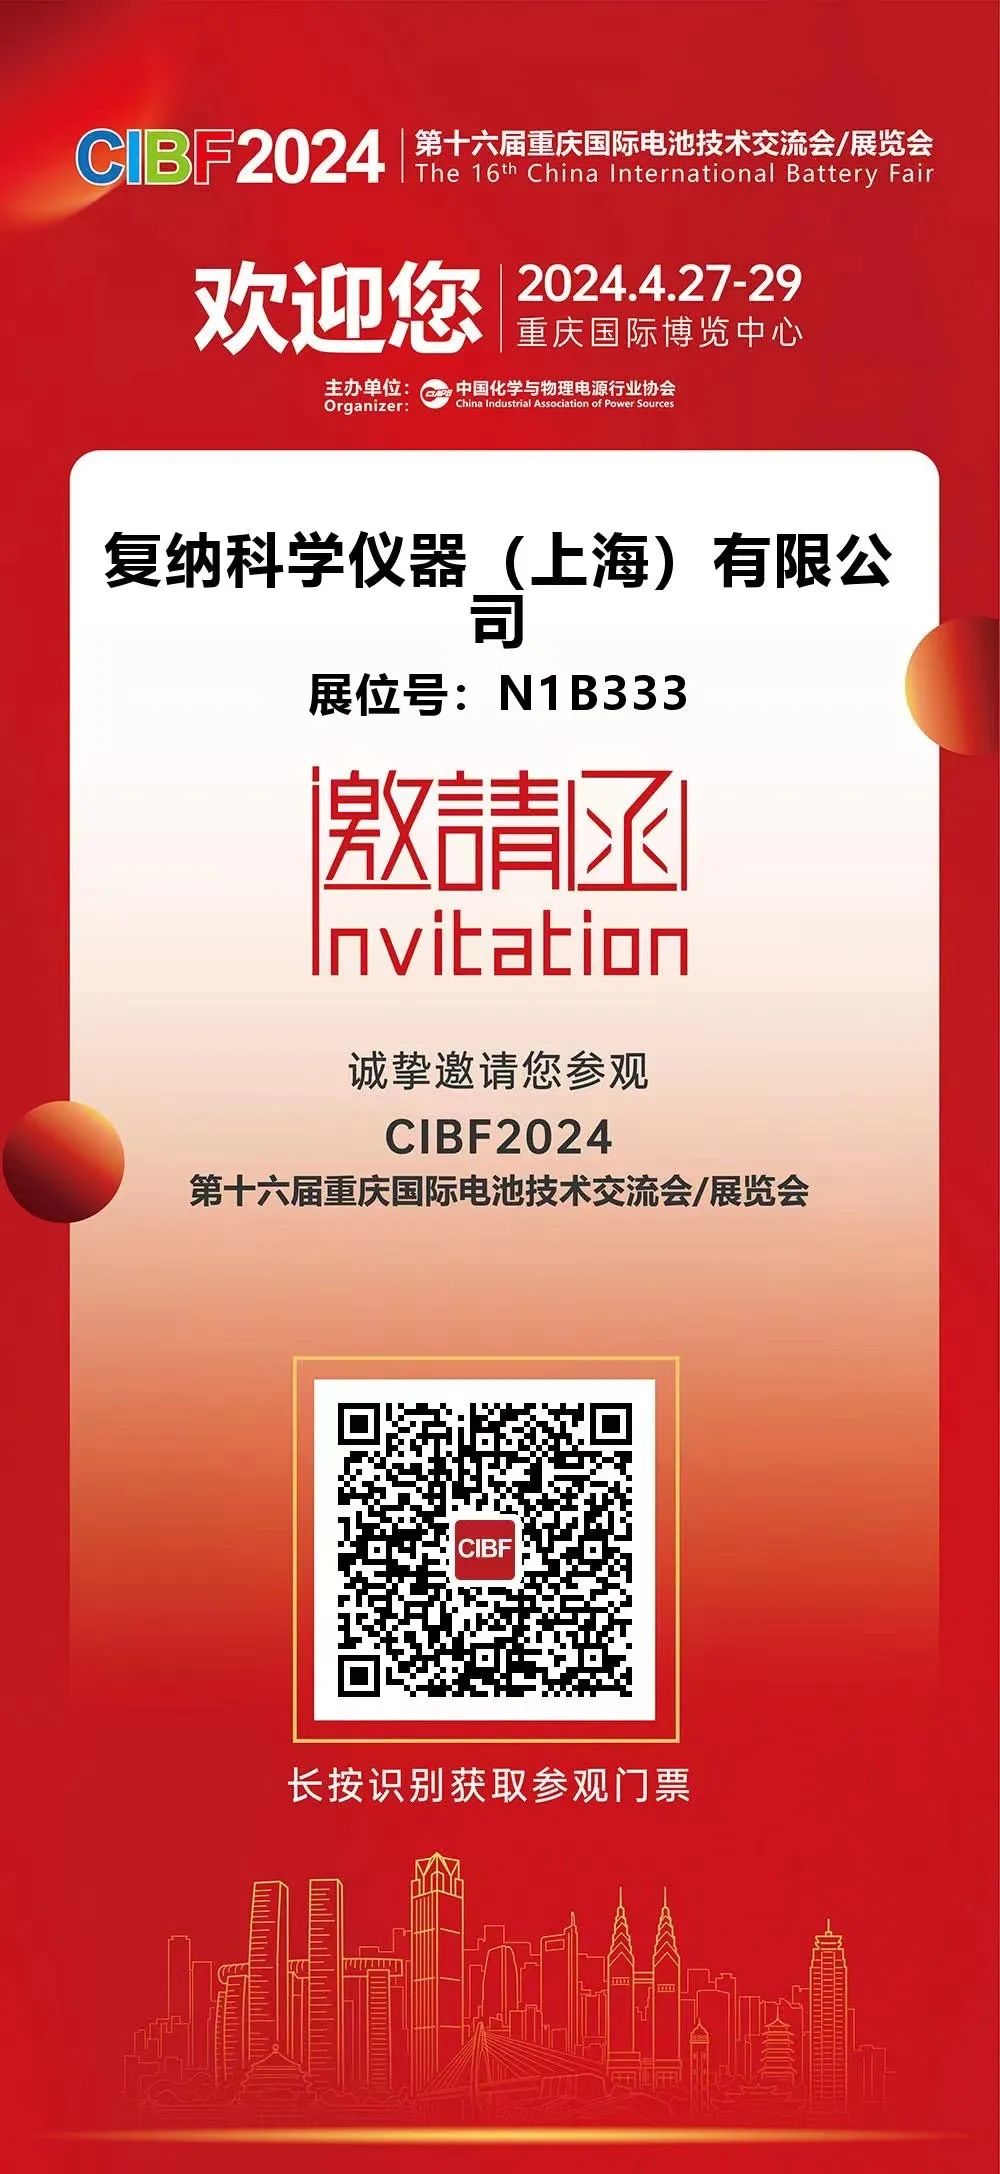 现场免费测样体验｜复纳科技邀您共赴重庆 CIBF 2024